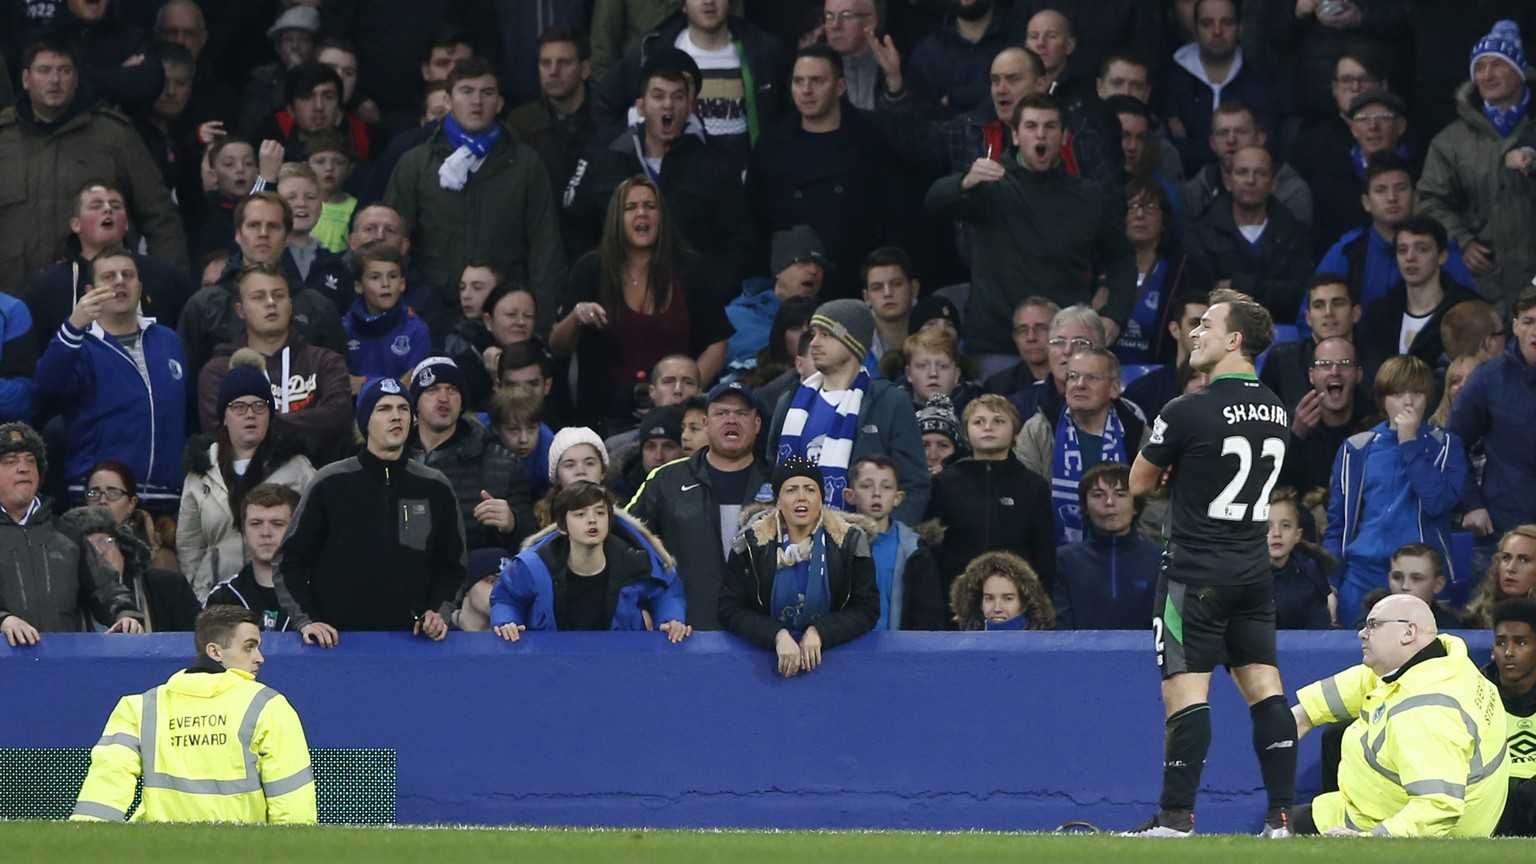 Grinsender Torschütze, hässige Fans: Shaqiri nach seinem Wundertor bei Everton.